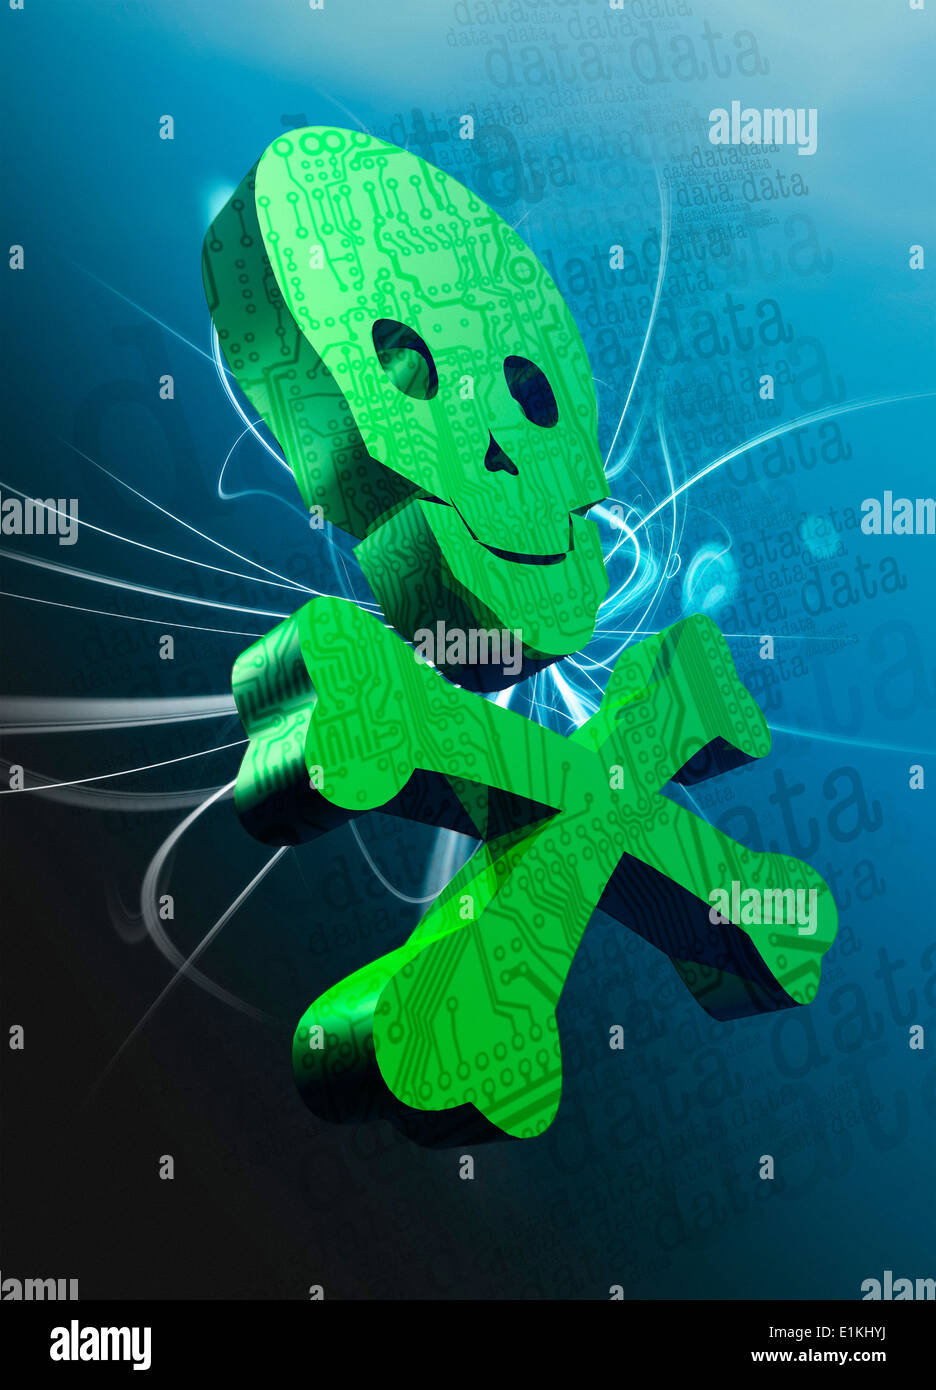 Grüne Schädel, Daten hacken konzeptuellen Kunstwerk darstellt. Stockfoto